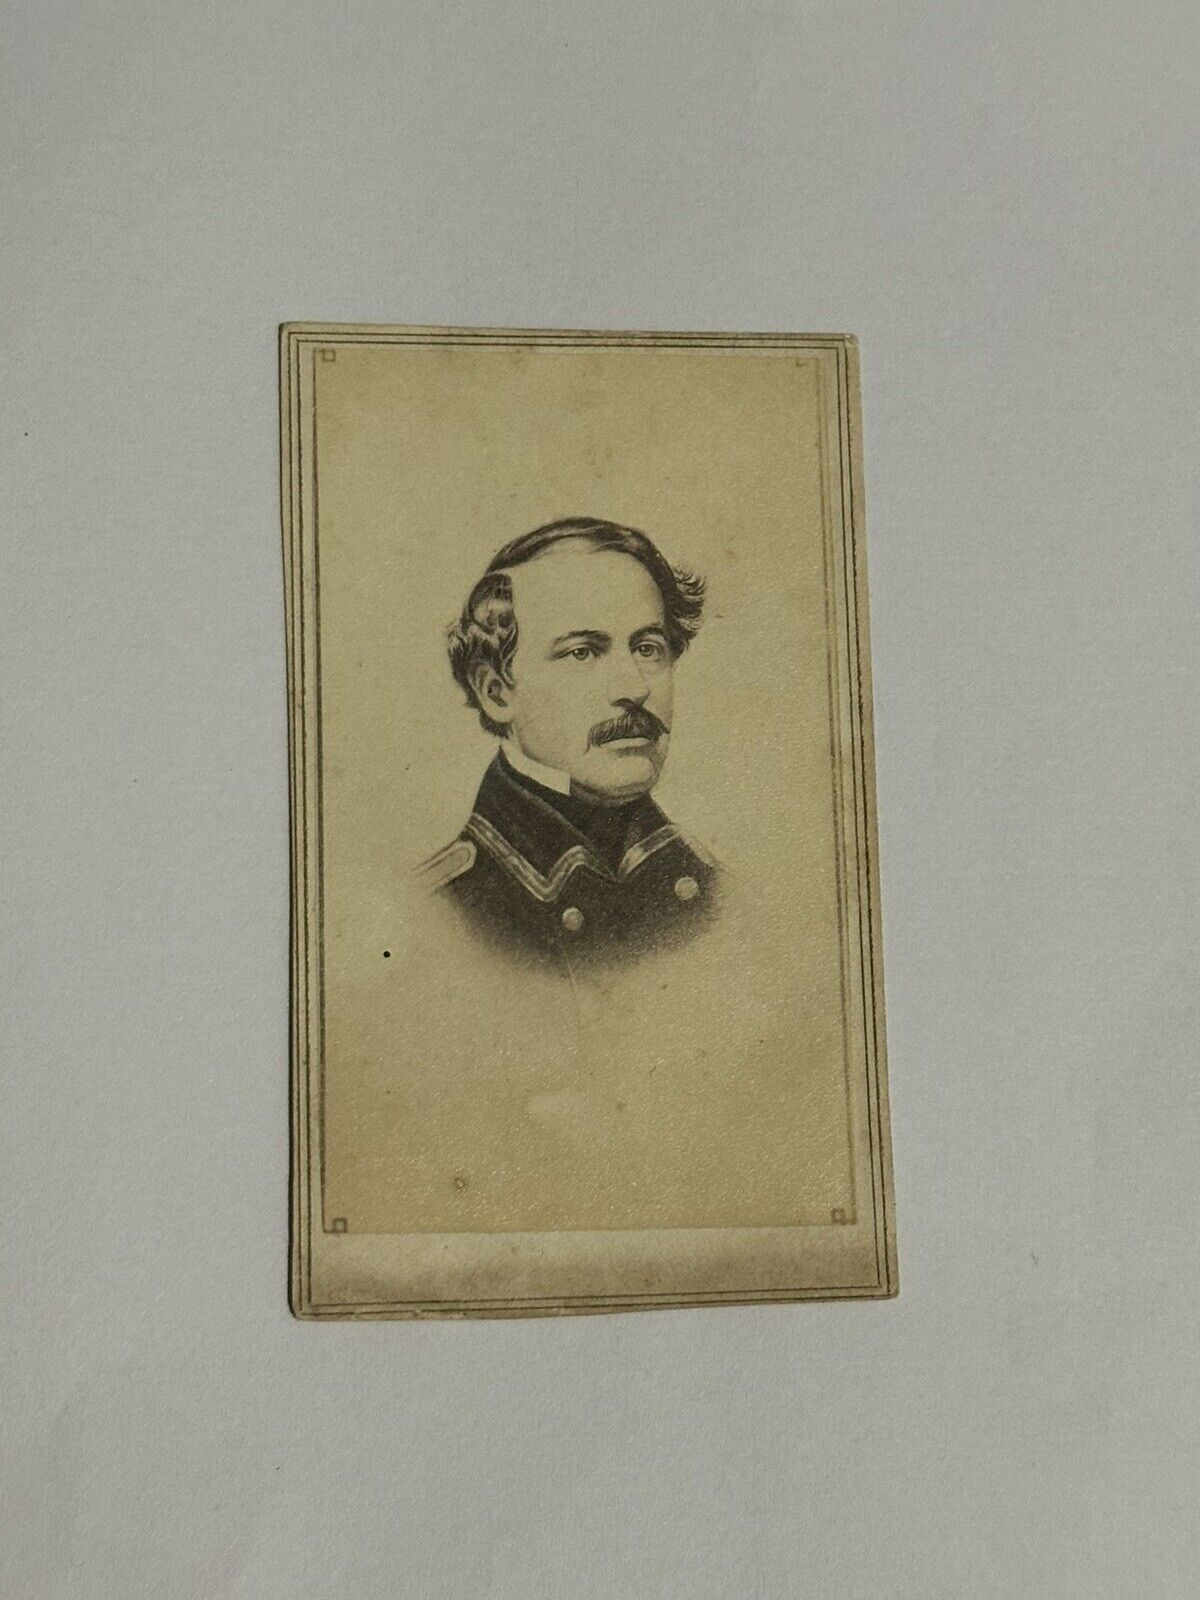 CDV Of Young Robert E Lee, Mexican American War, Civil War General, Portrait